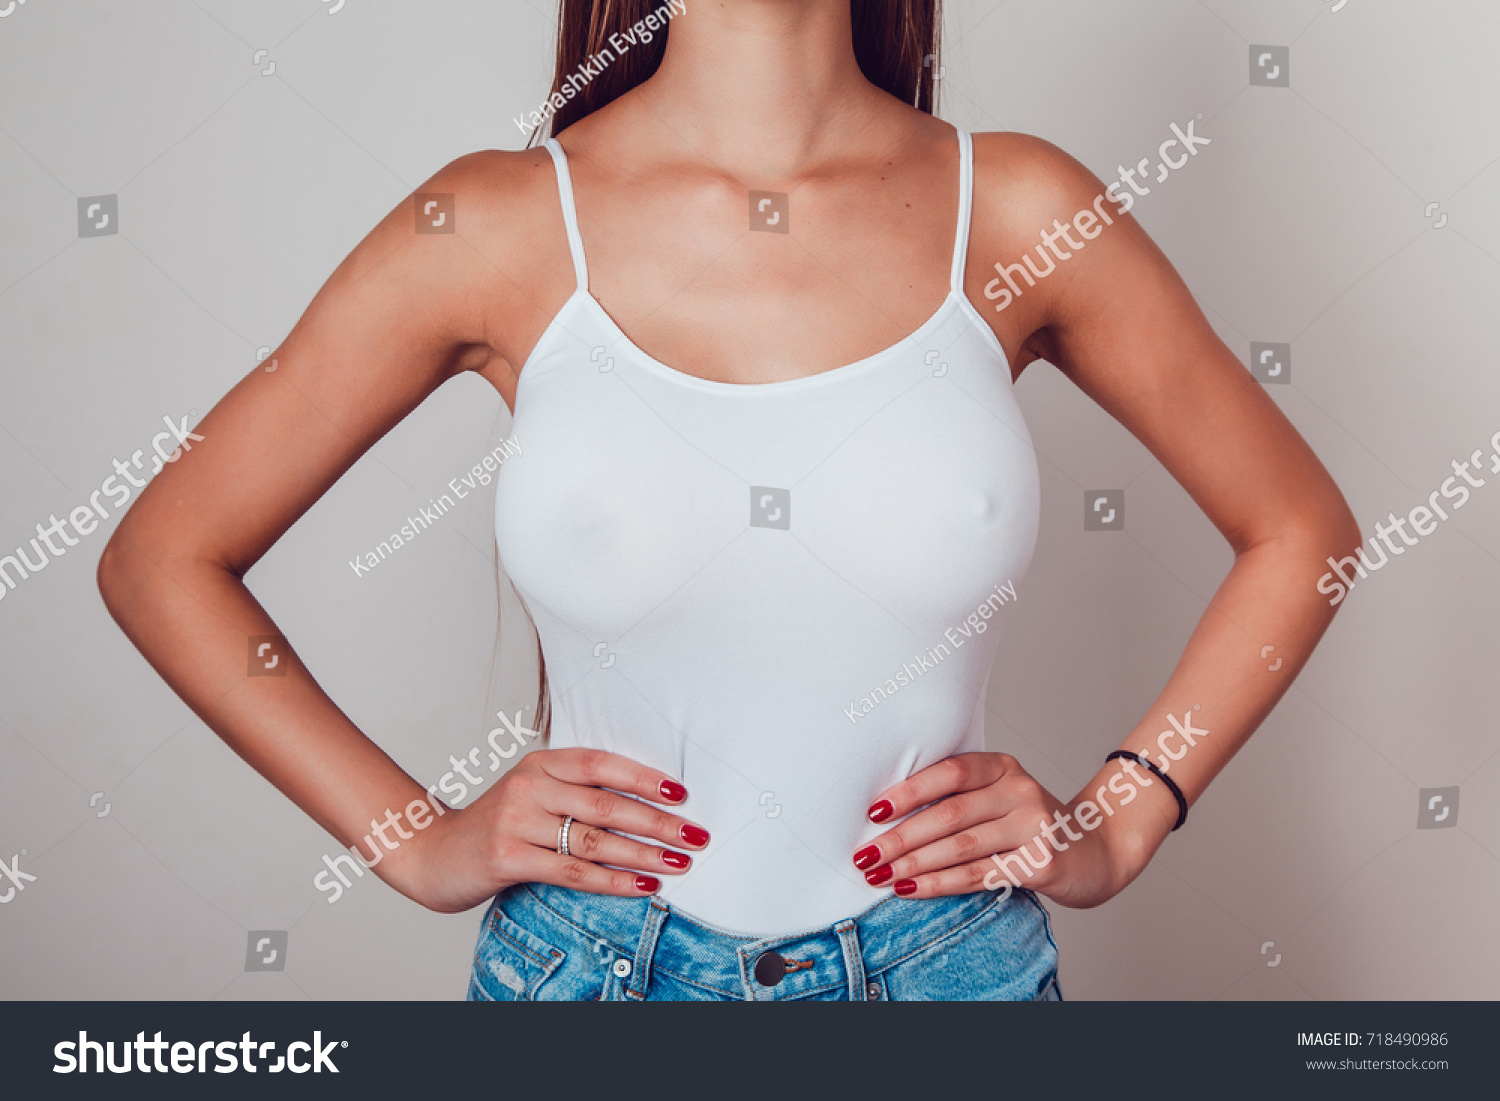 big tits in shirts